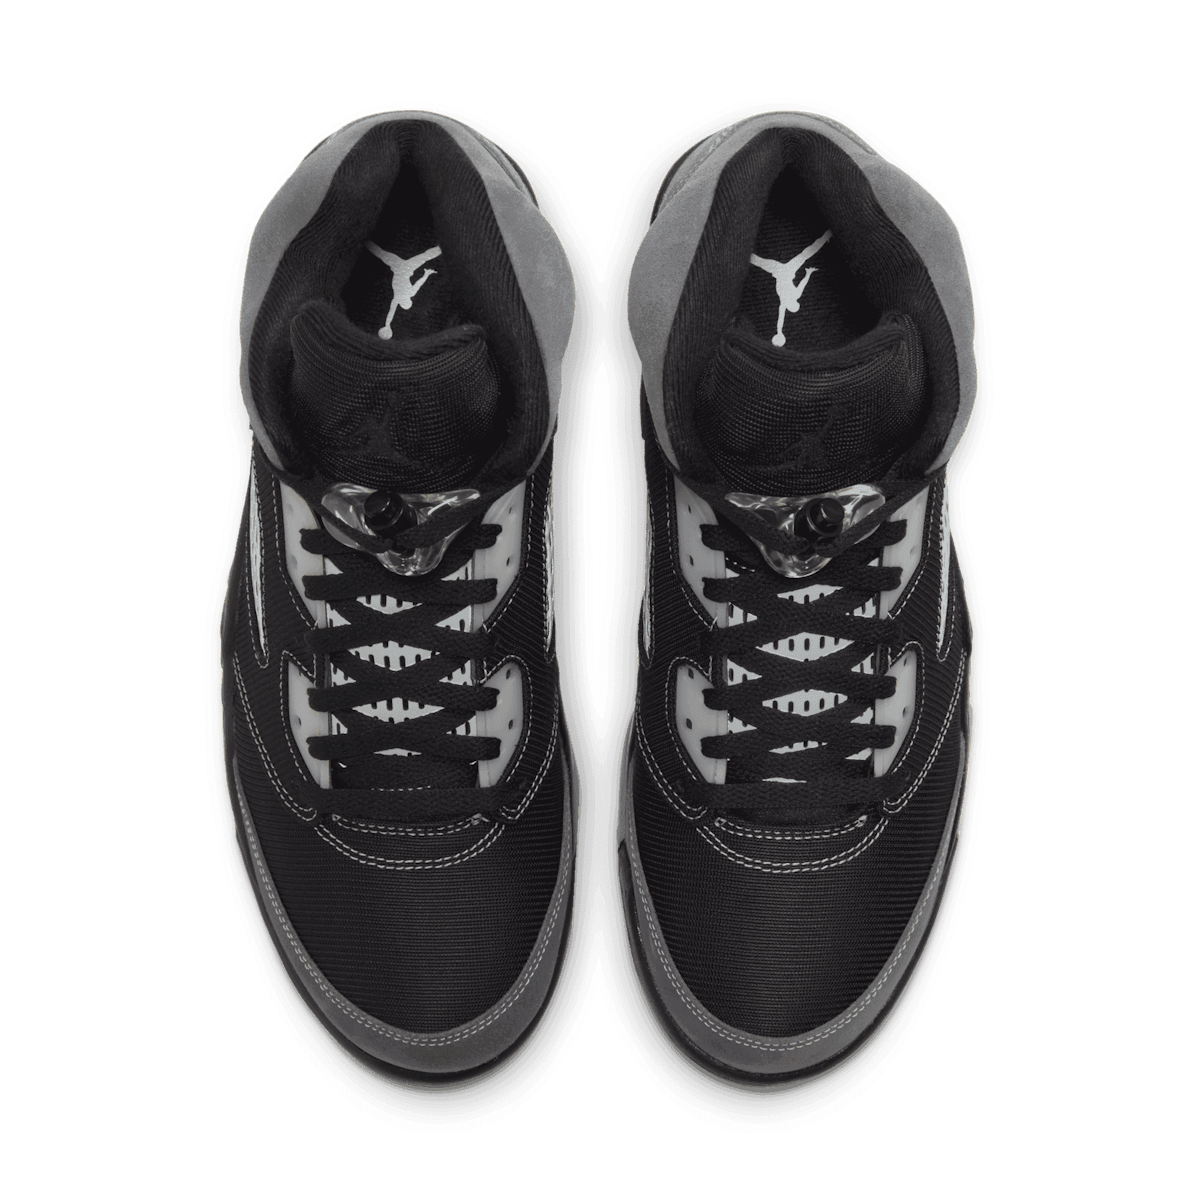 Air Jordan 5 Retro Anthracite - DB0731-001 Raffles and Release Date